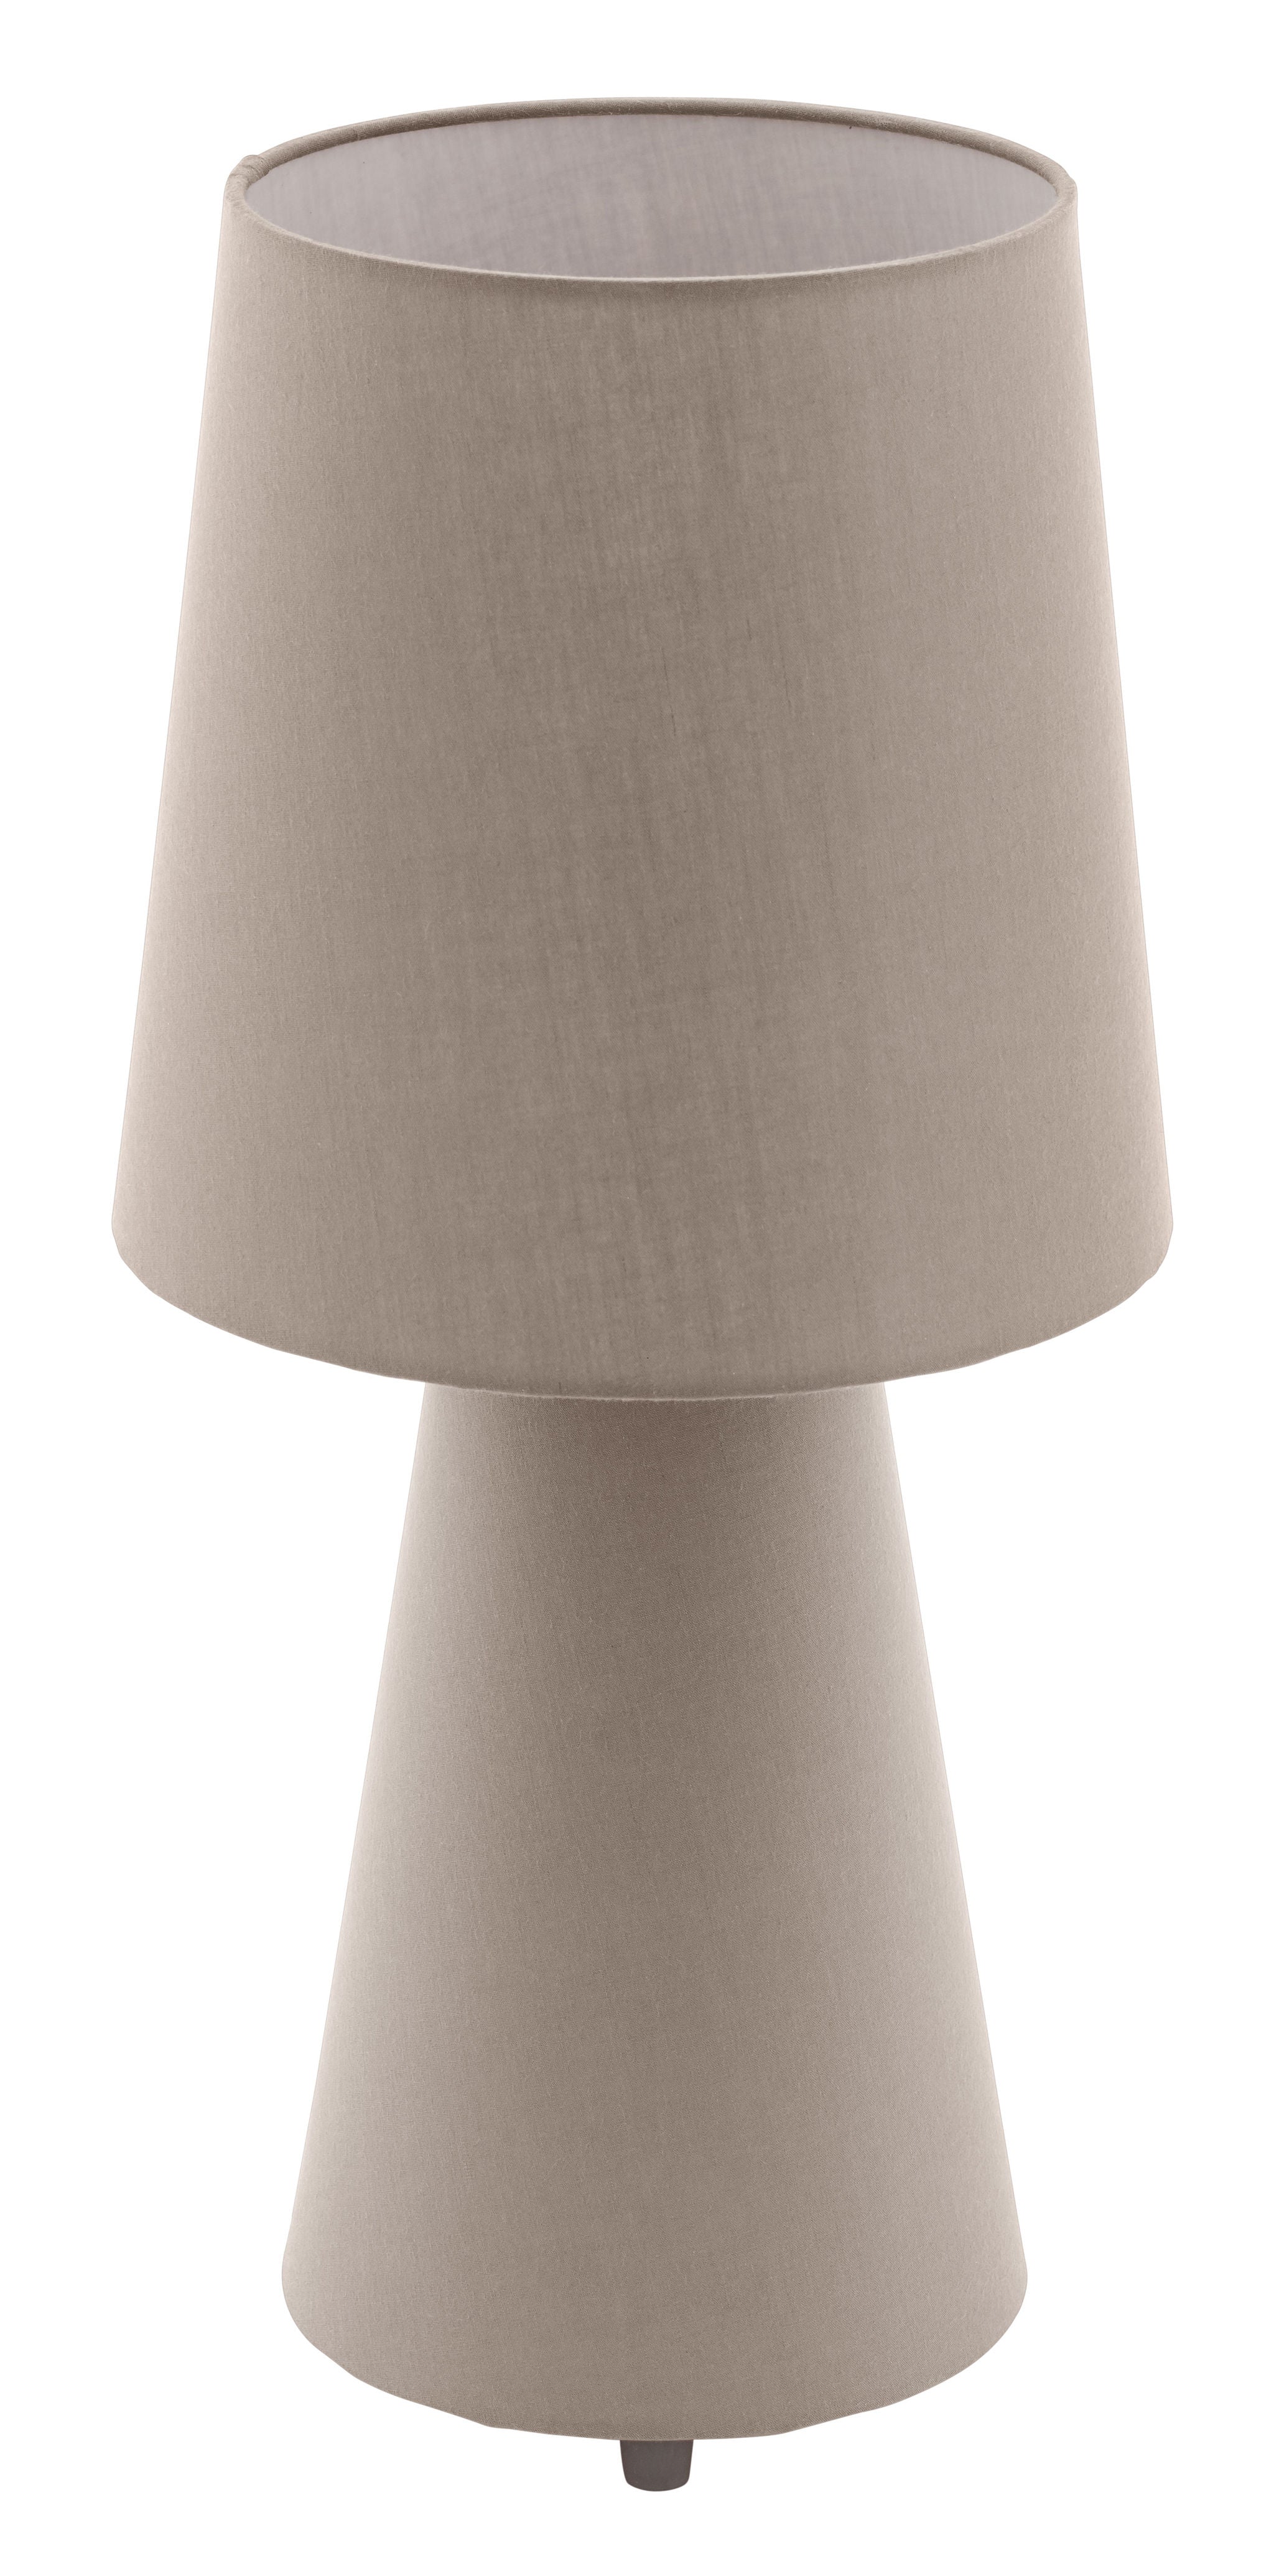 Carpara Lampe sur table Brun - 97134A | EGLO